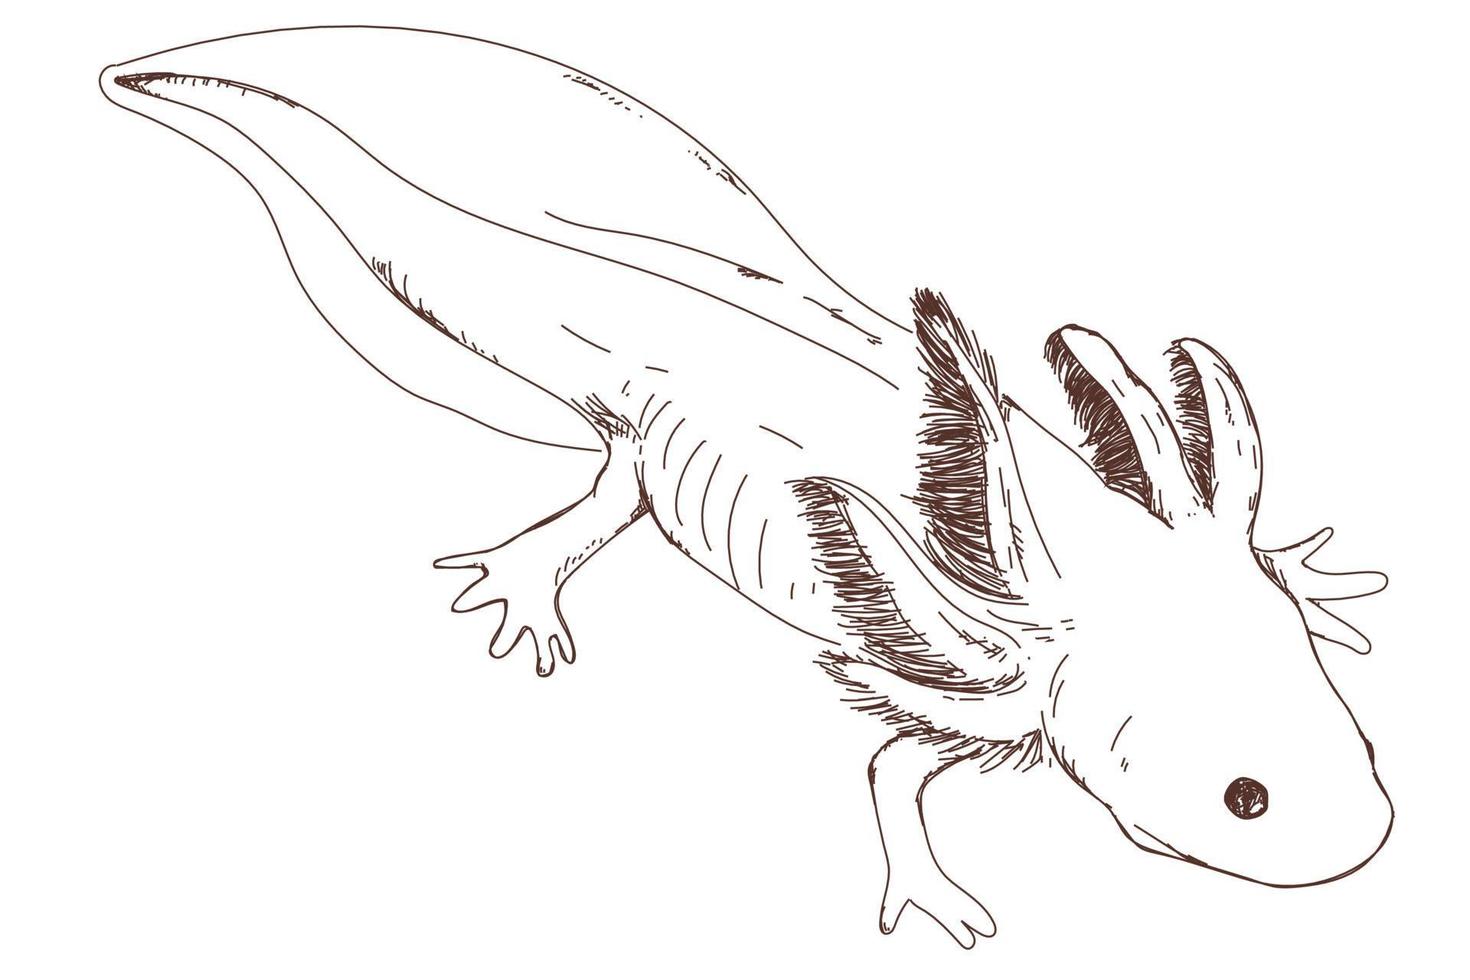 desenho de axolotl fofo, gravura vintage, desenhado à mão vetor